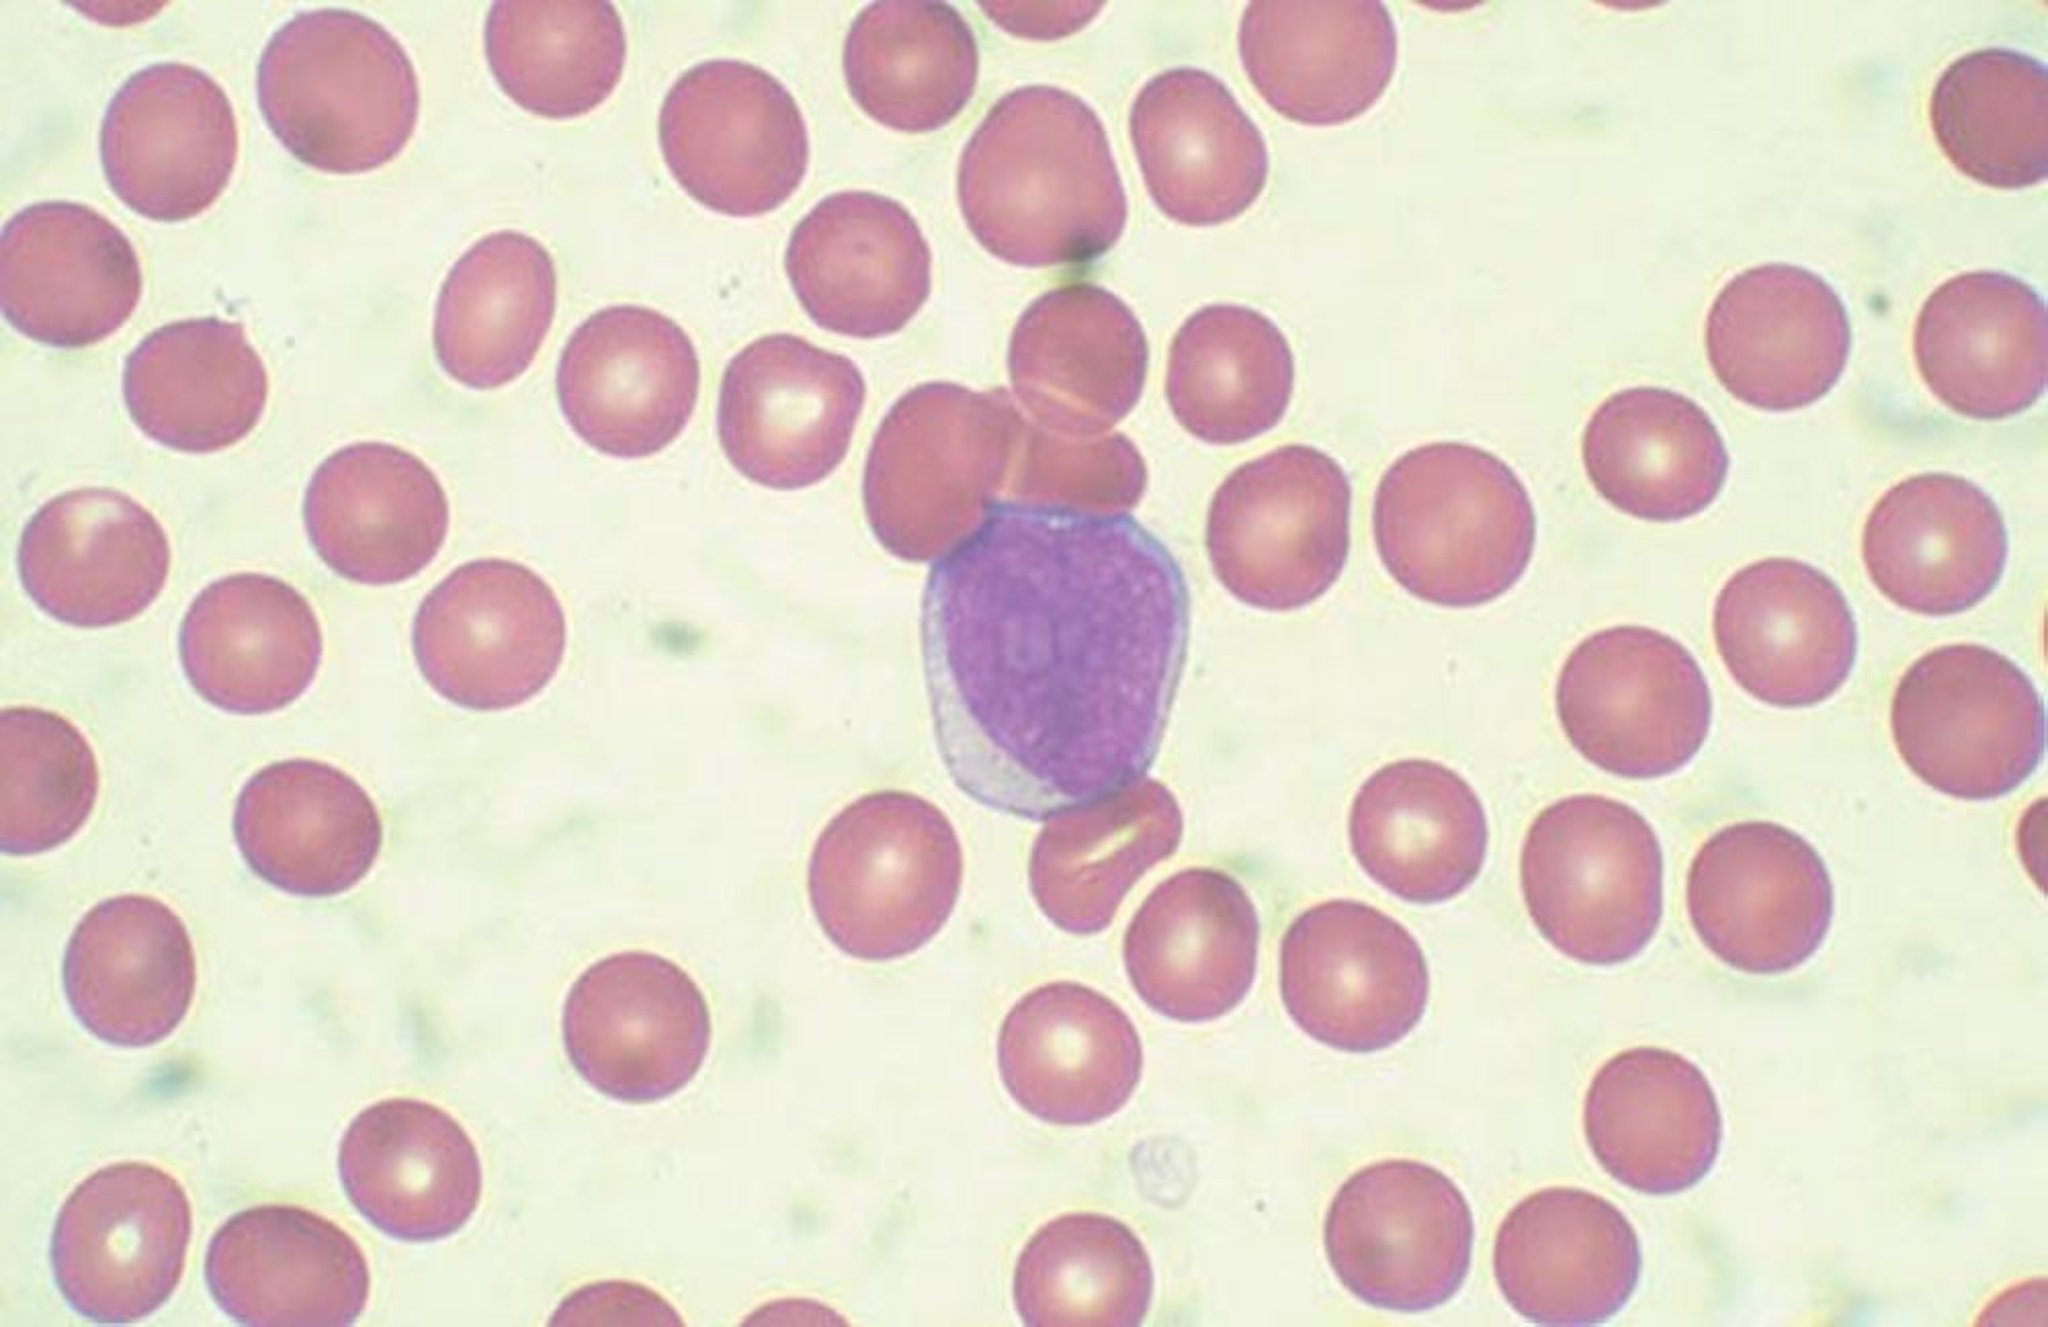 Cellules blastiques sanguines périphériques